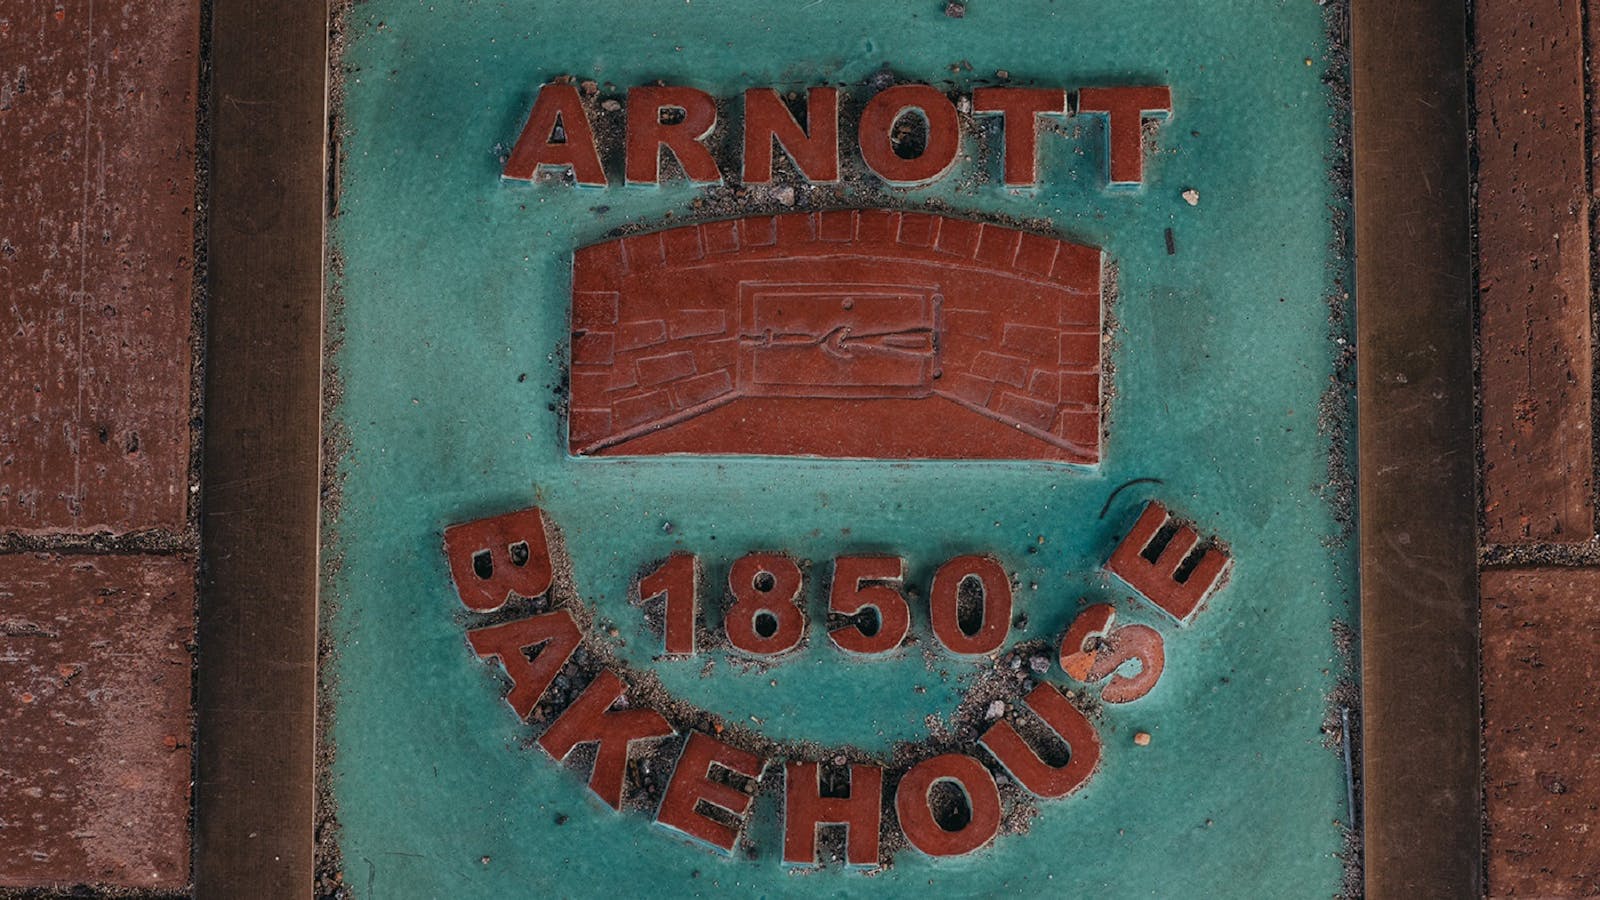 The Historic Arnott Bakehouse